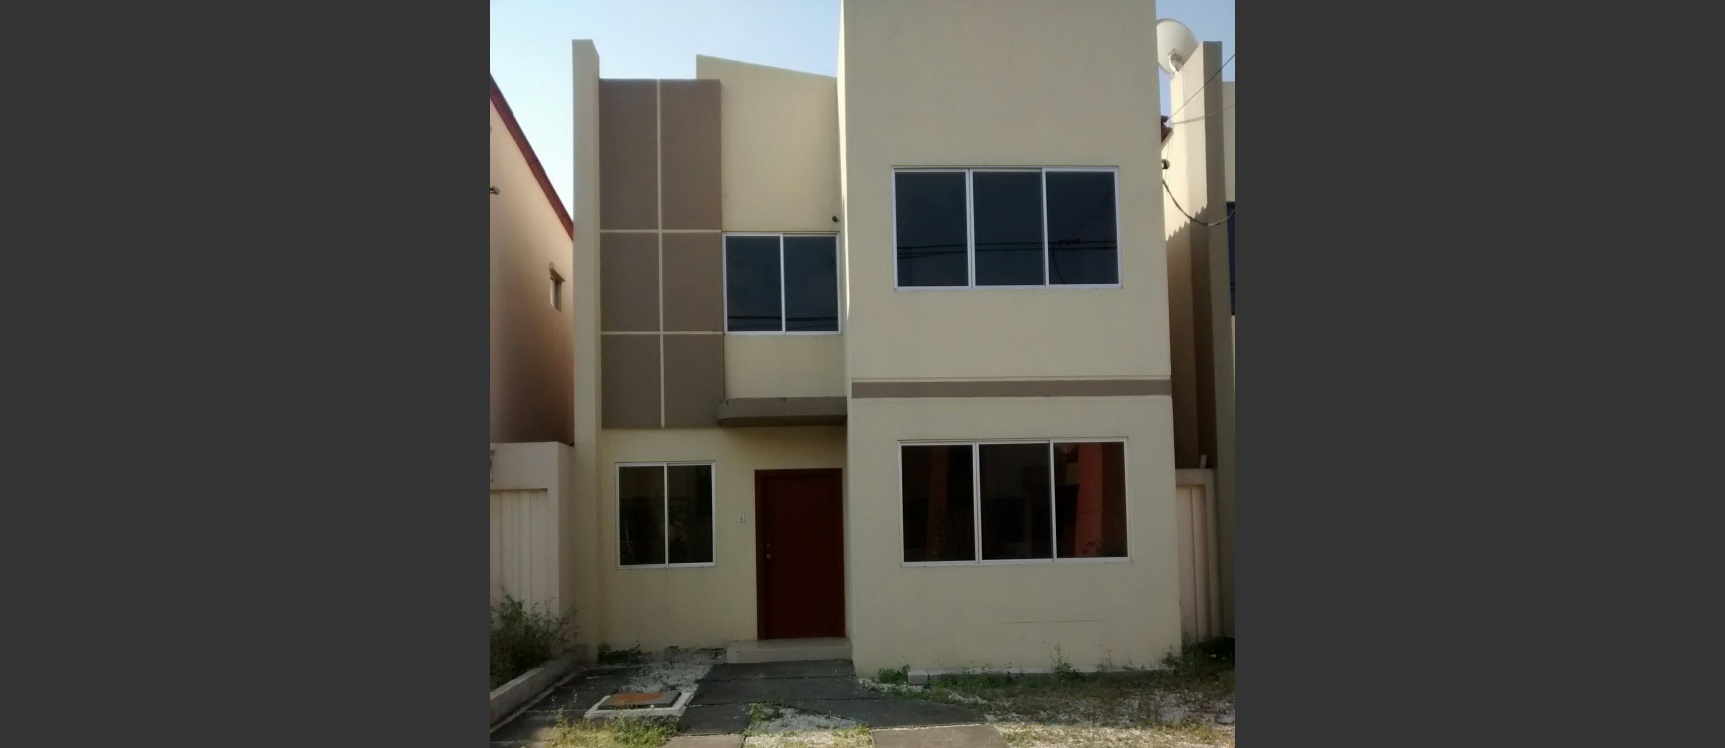 GeoBienes - Casa en alquiler en Vía a Samborondón Urbanización Castilla Guayaquil - Plusvalia Guayaquil Casas de venta y alquiler Inmobiliaria Ecuador